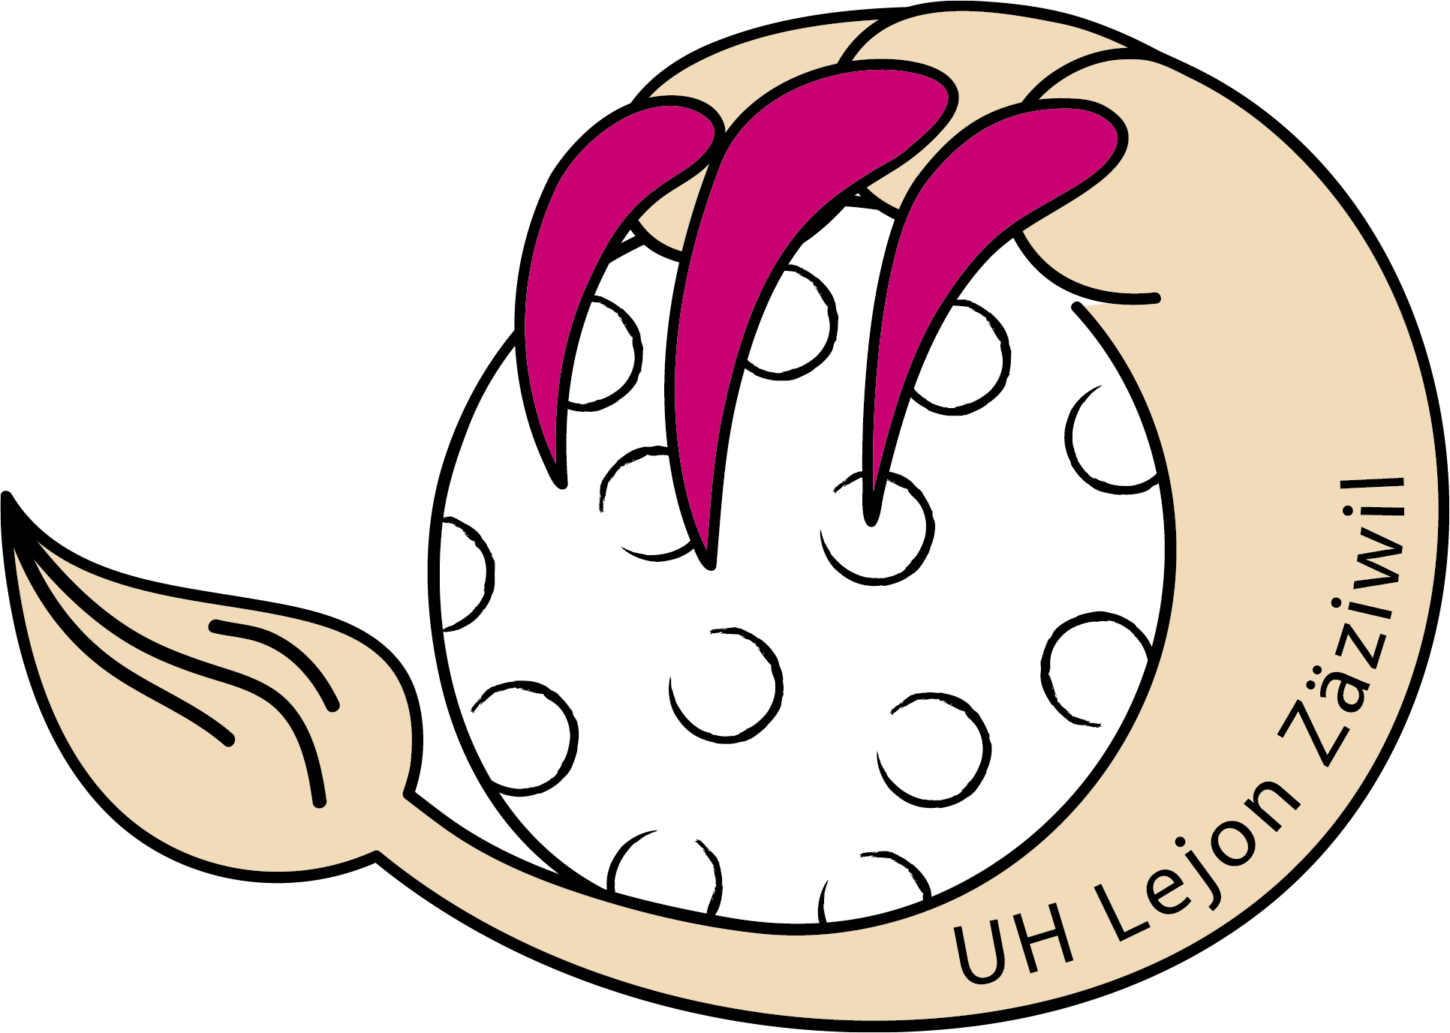 UH Lejon Logo